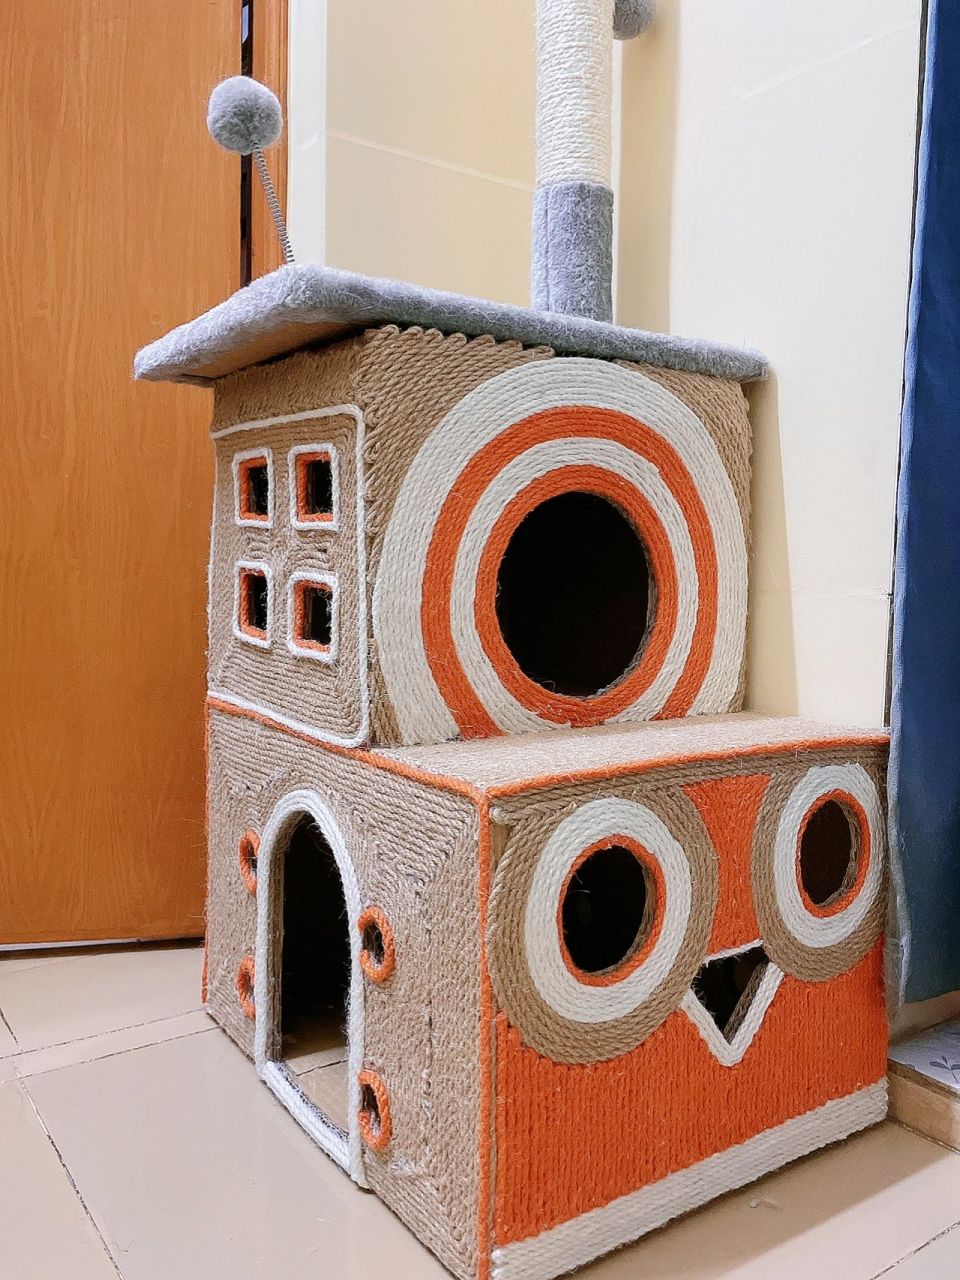 用纸箱制作猫咪房子图片